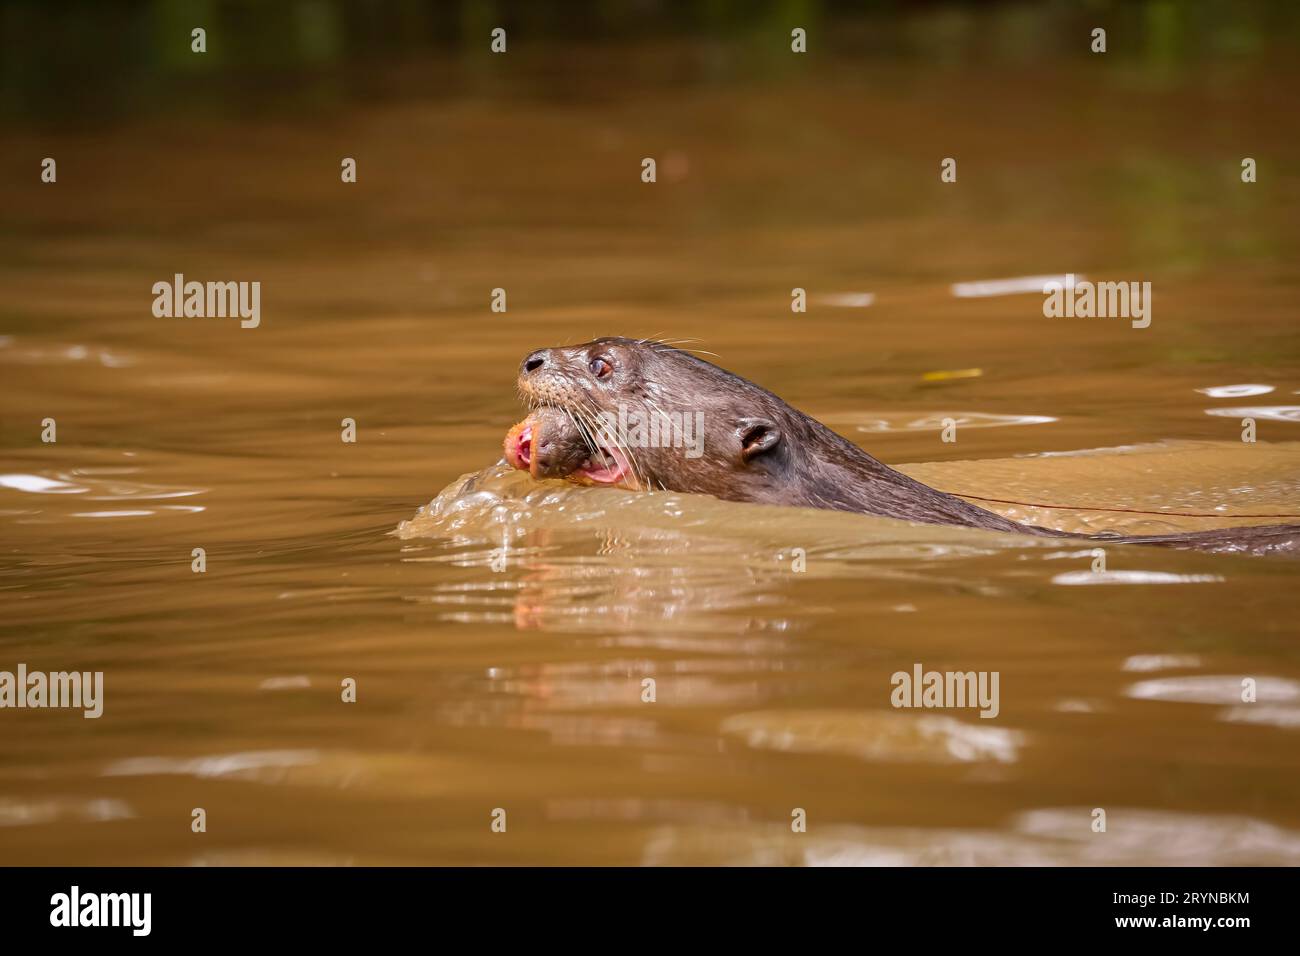 Nahaufnahme eines Riesenotter, der in einem Fluss schwimmt, mit seinem Baby im Mund, Seitenansicht, Pantanal Wetlan Stockfoto